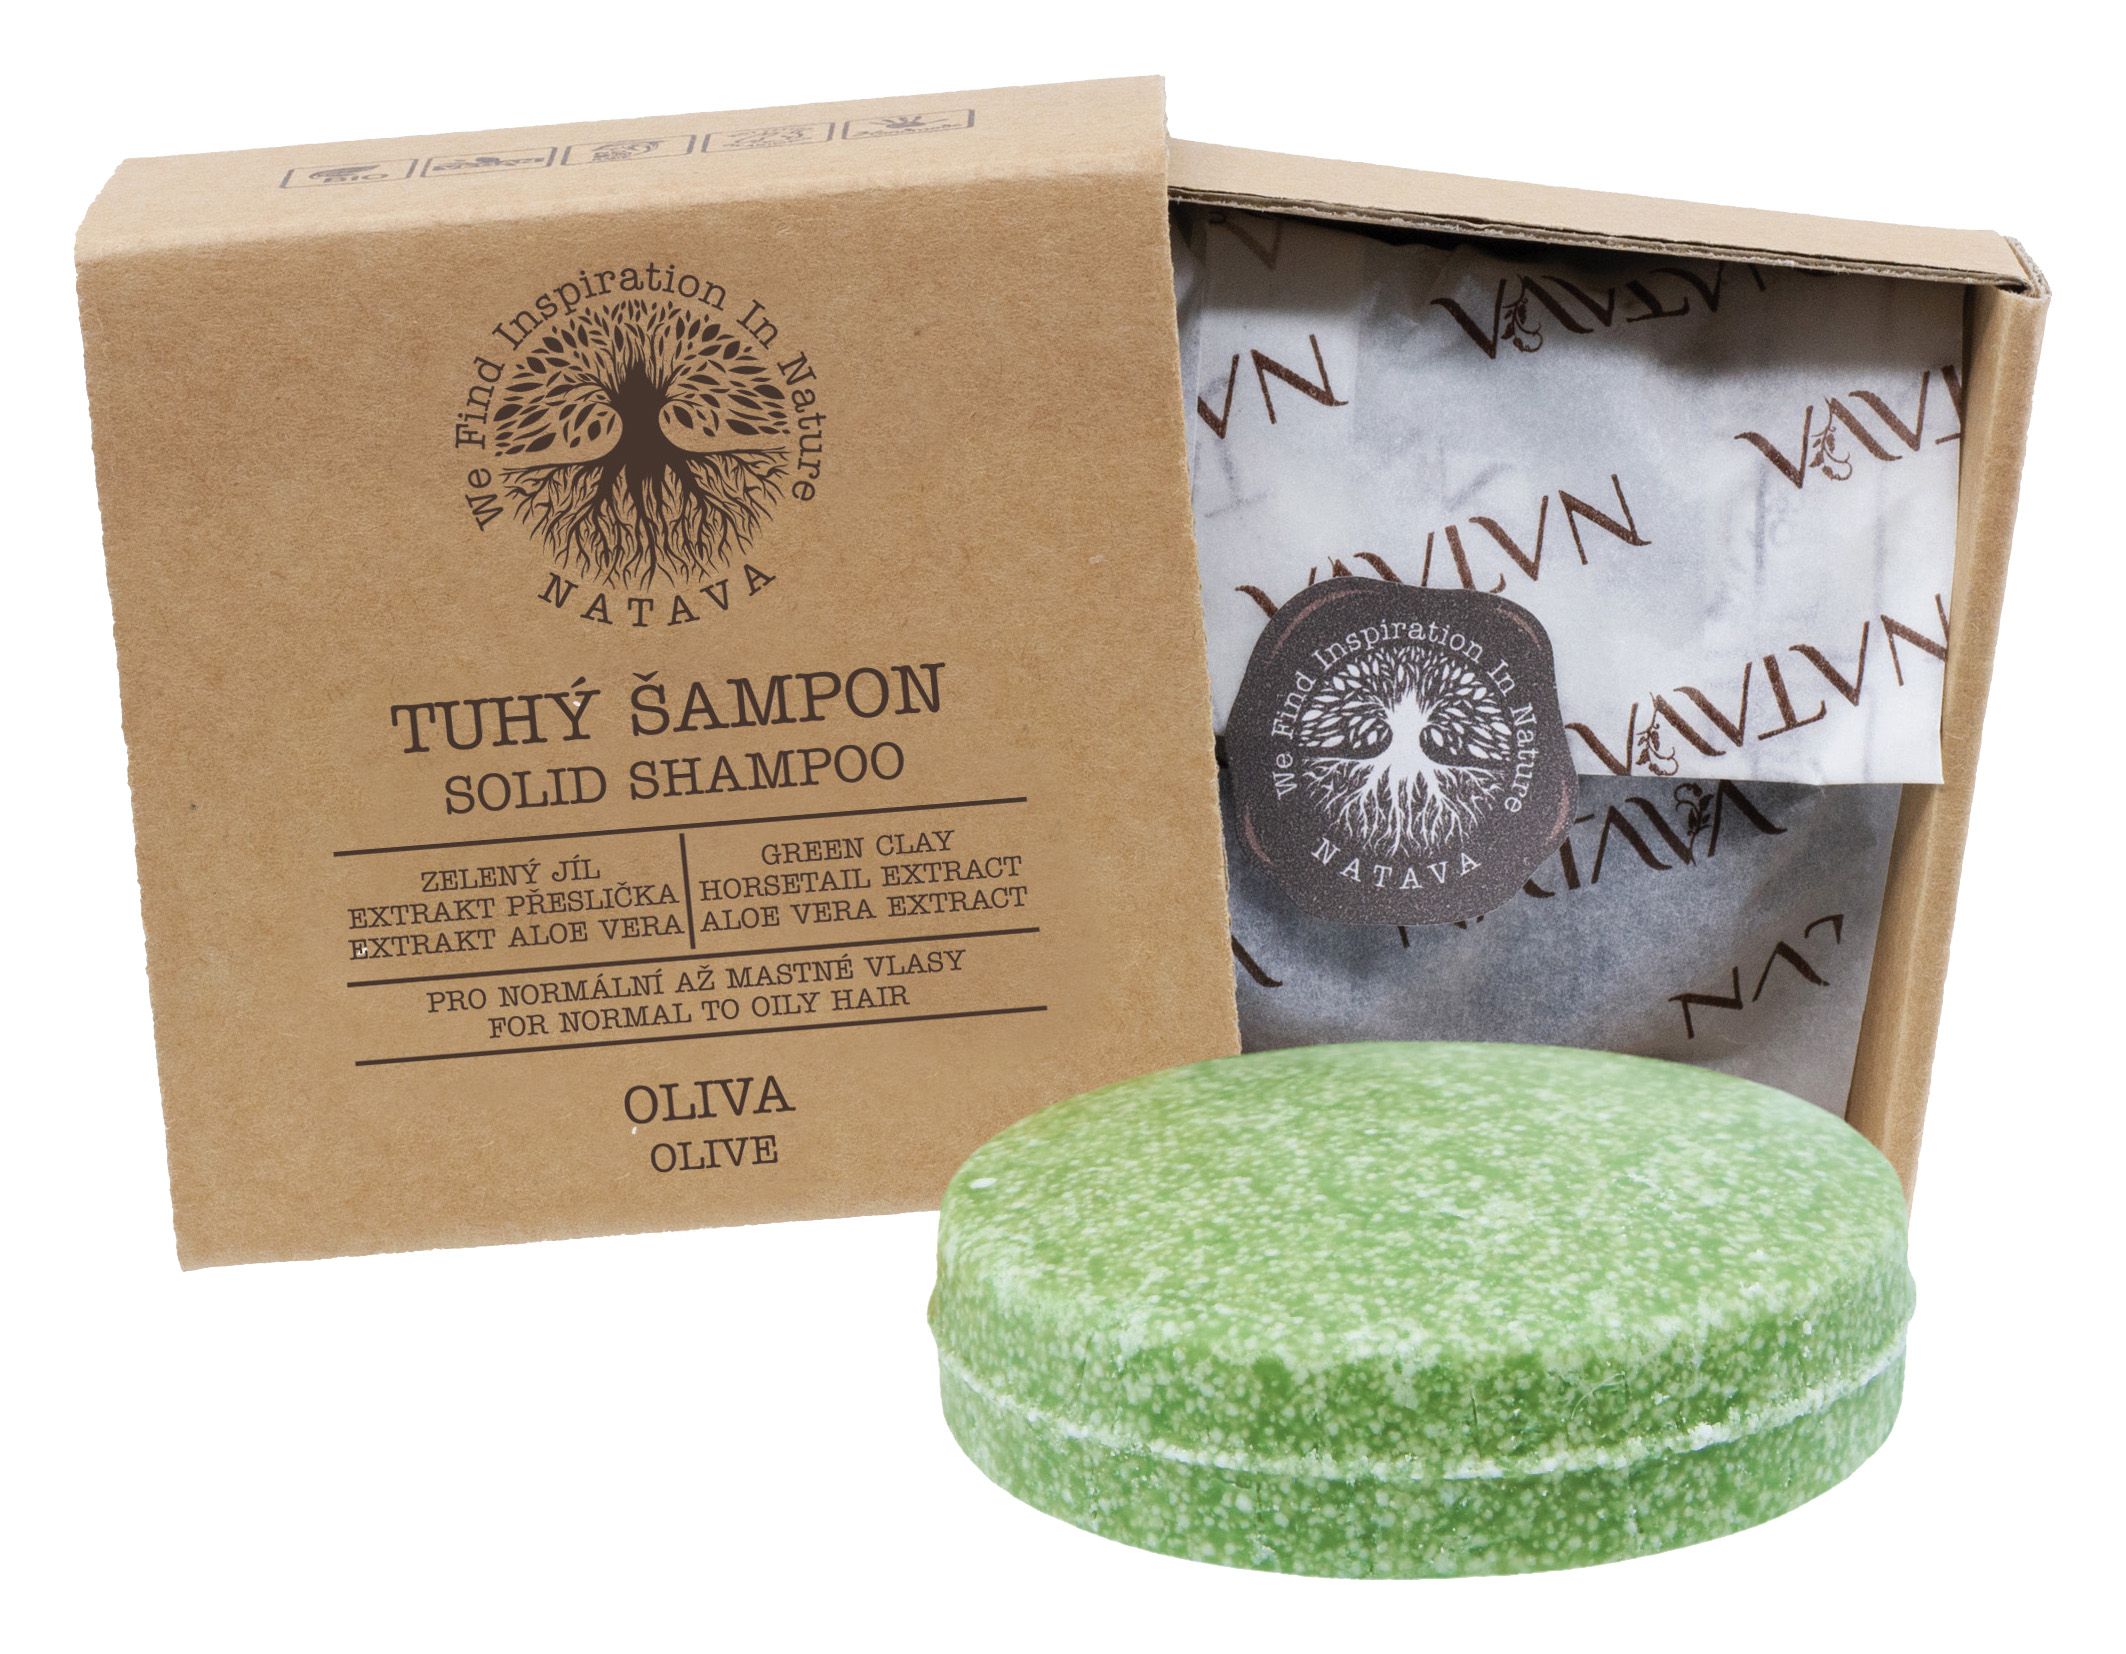 Levně NATAVA Tuhý šampon Oliva - normálně + rychle se mastící vlasy (zelený jíl, olivový olej, aloe) 85g